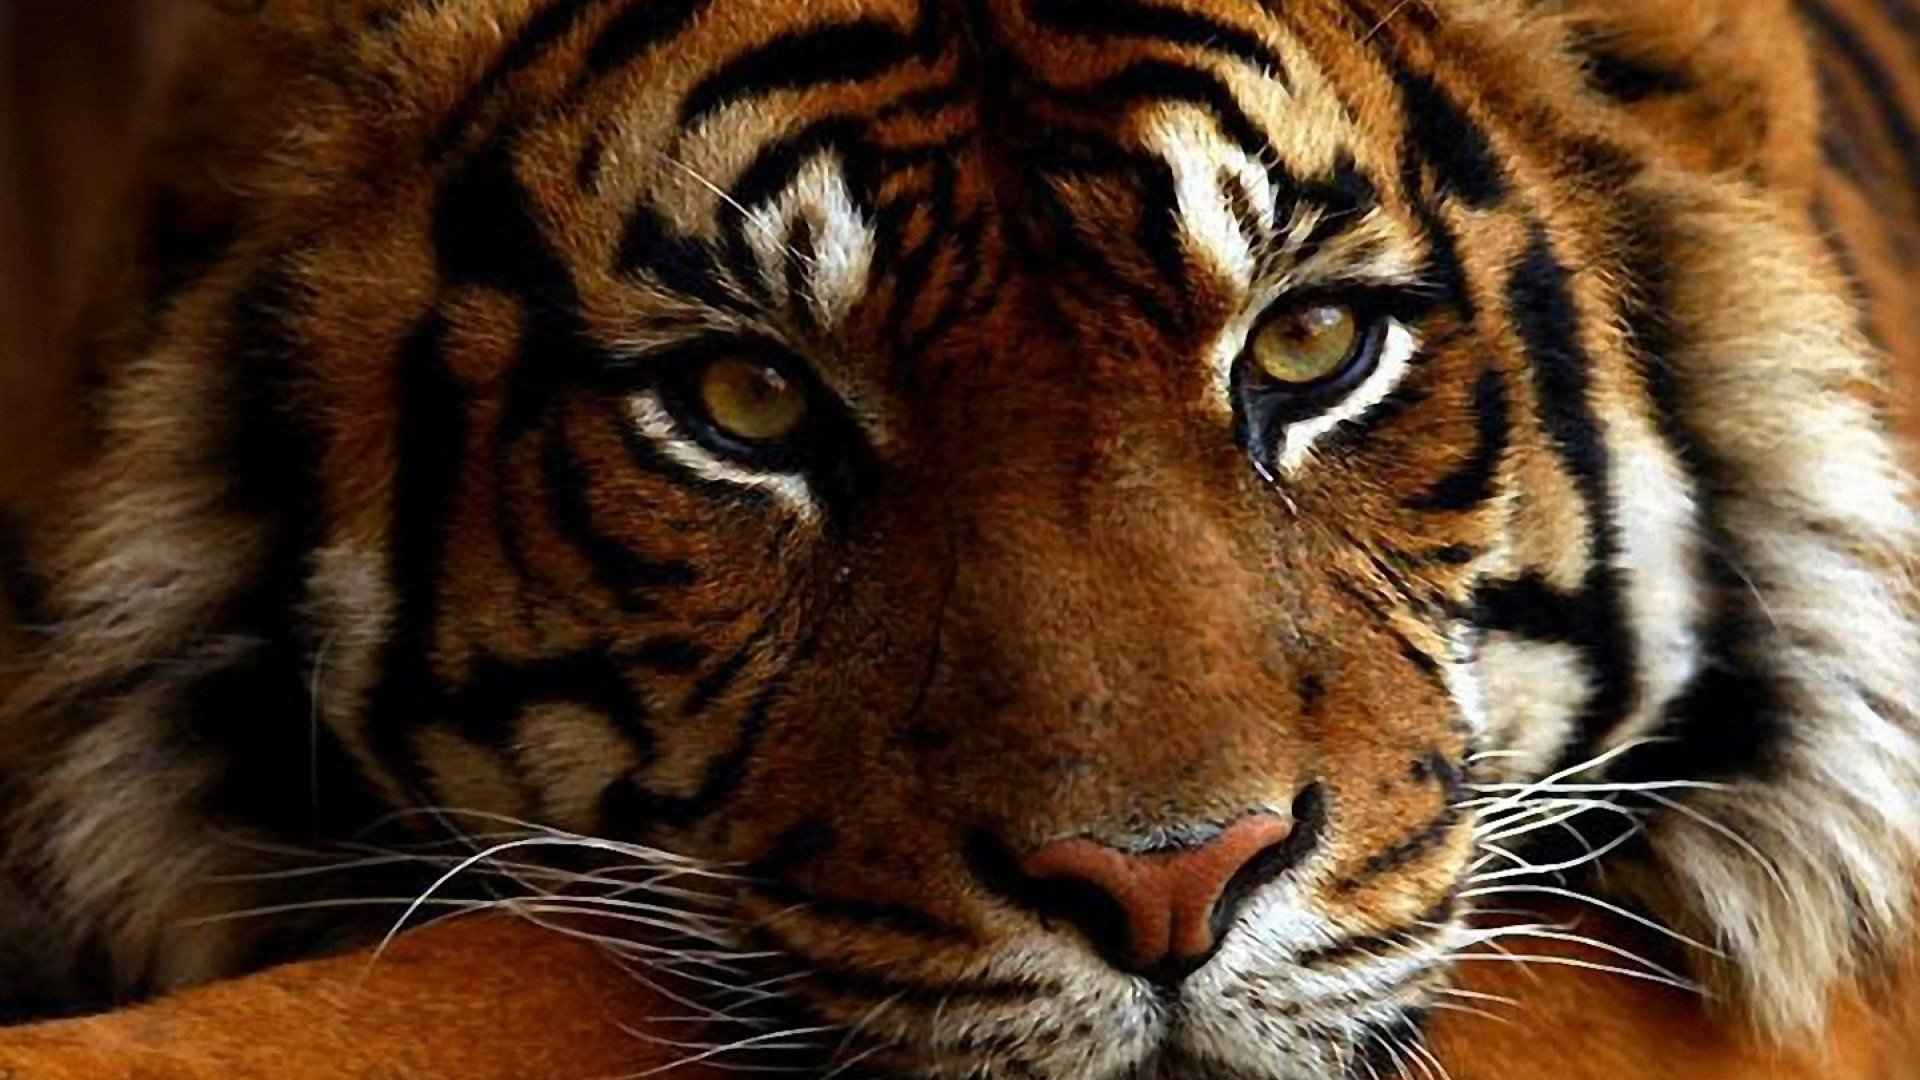 Tiger and Cat Wallpaper